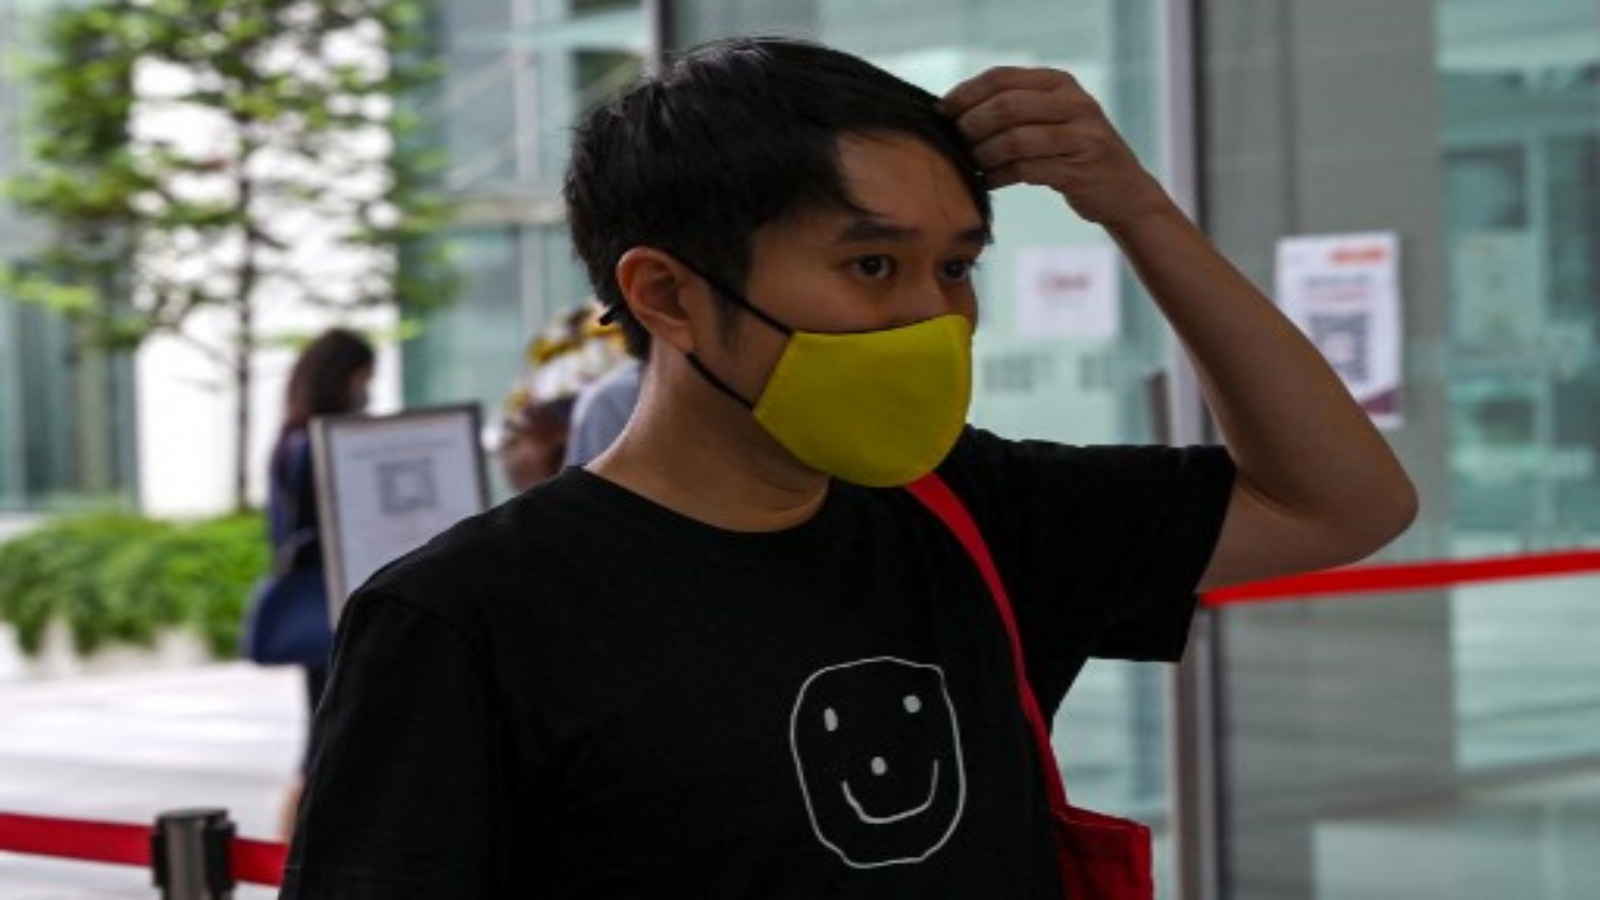 الناشط جولوفان وام يصل إلى محكمة الدولة في سنغافورة في 15 فبراير 2021 ، لإصدار حكم بشأن احتجاج على متن قطار مترو ضد اعتقال الشيوعيين المزعومين في الثمانينيات.